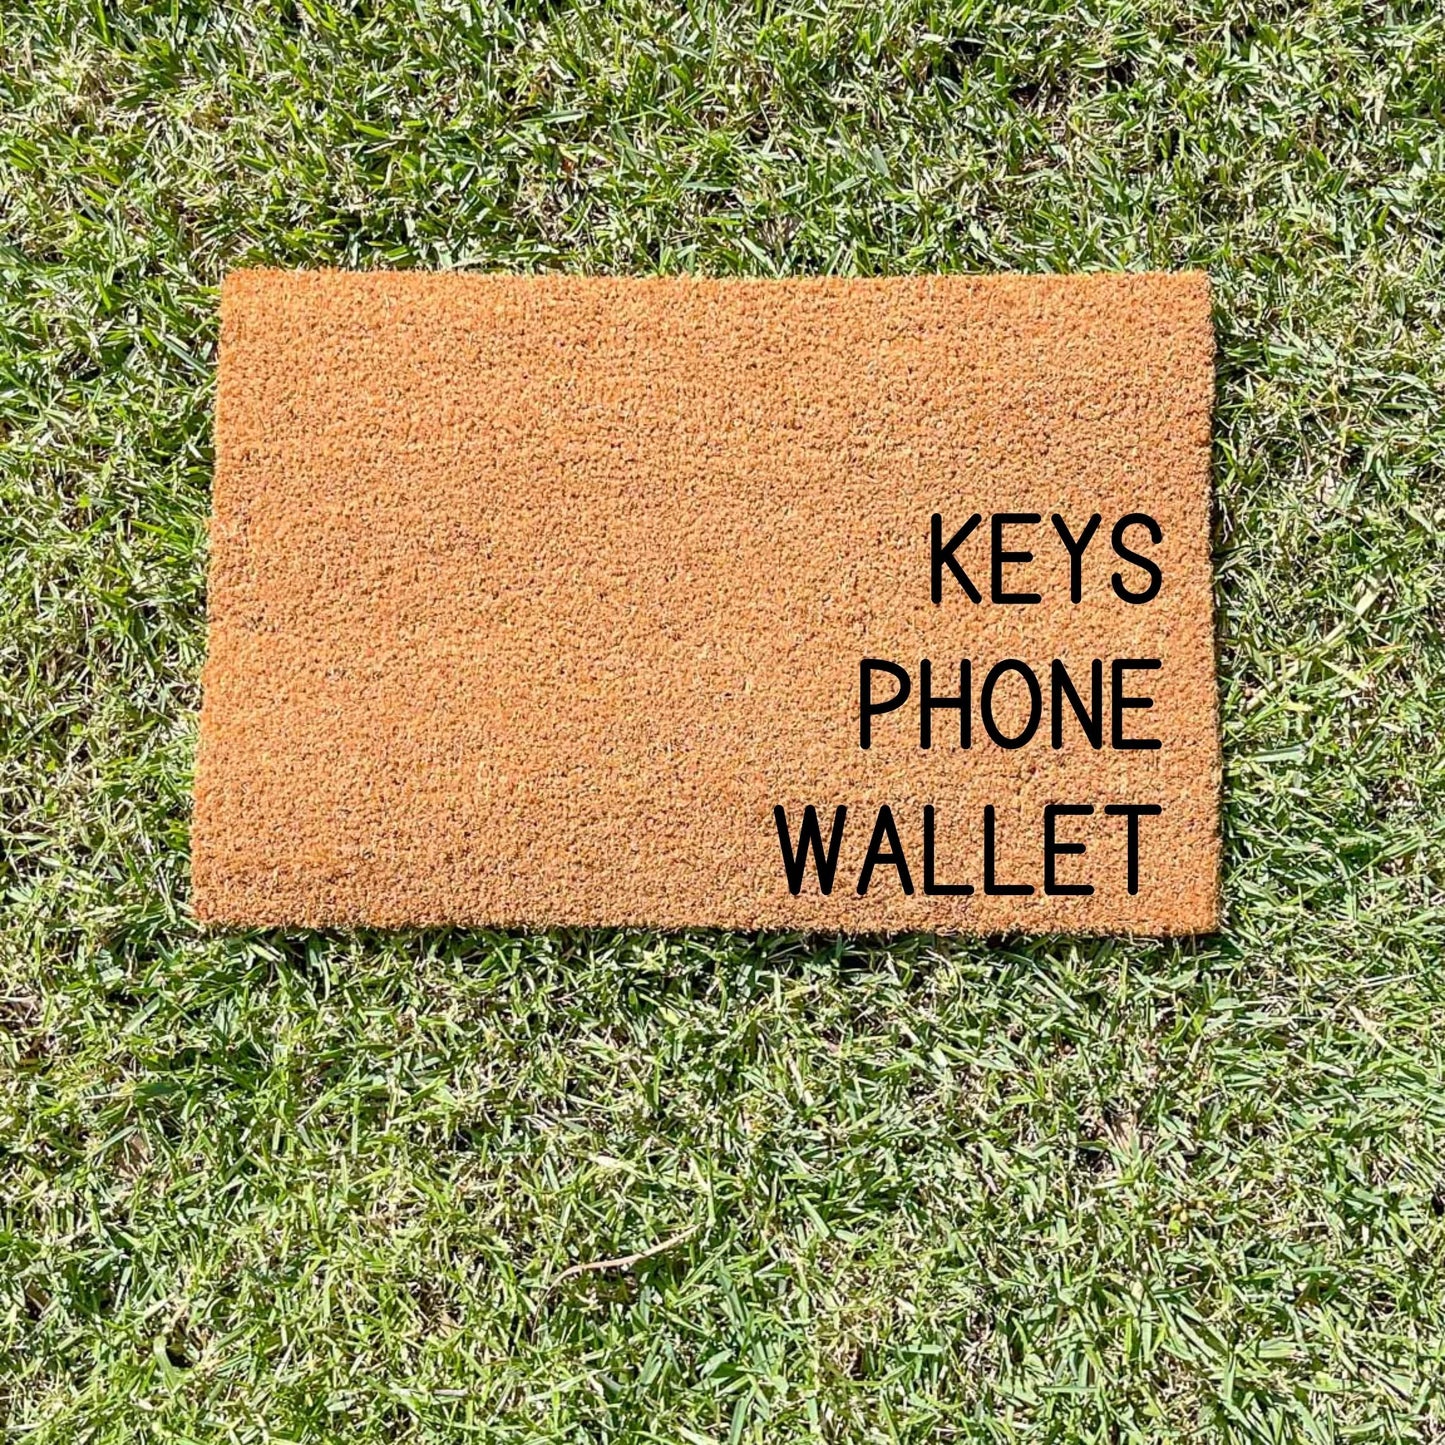 Keys phone wallet doormat, sassy doormat, custom doormat, personalised doormat